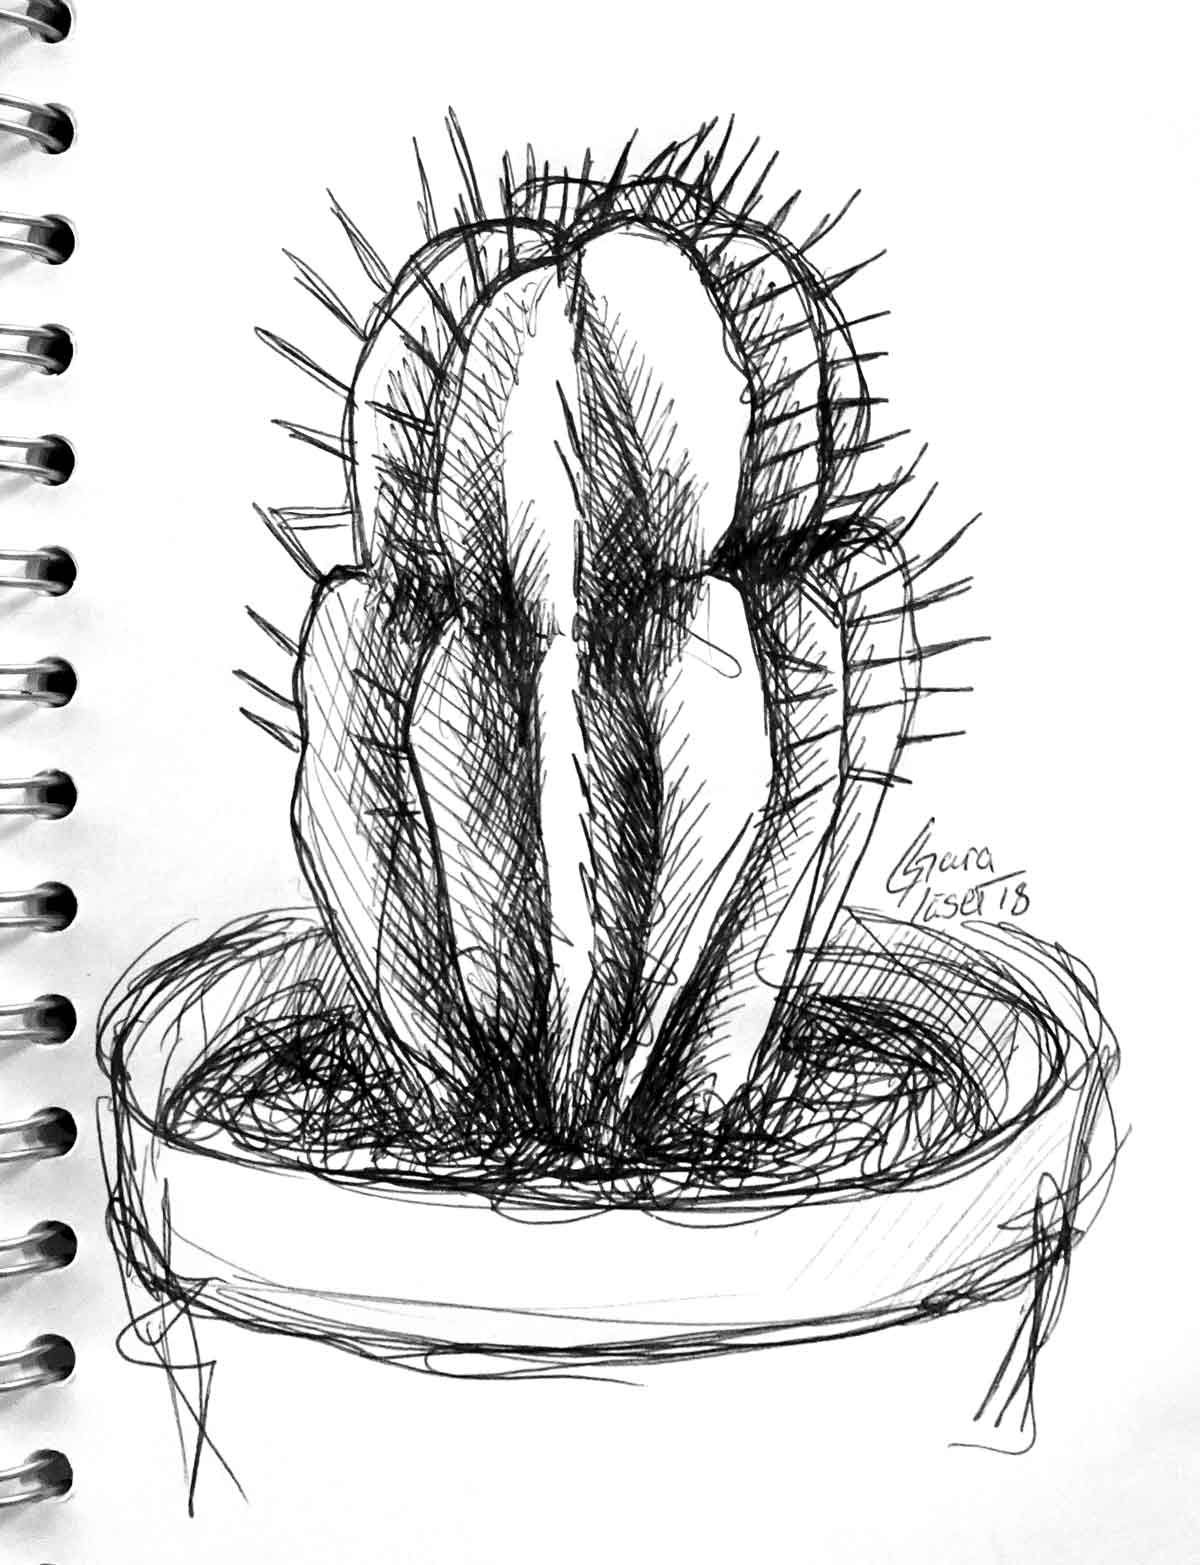 schwarze Kulizeichnung eines Kaktus